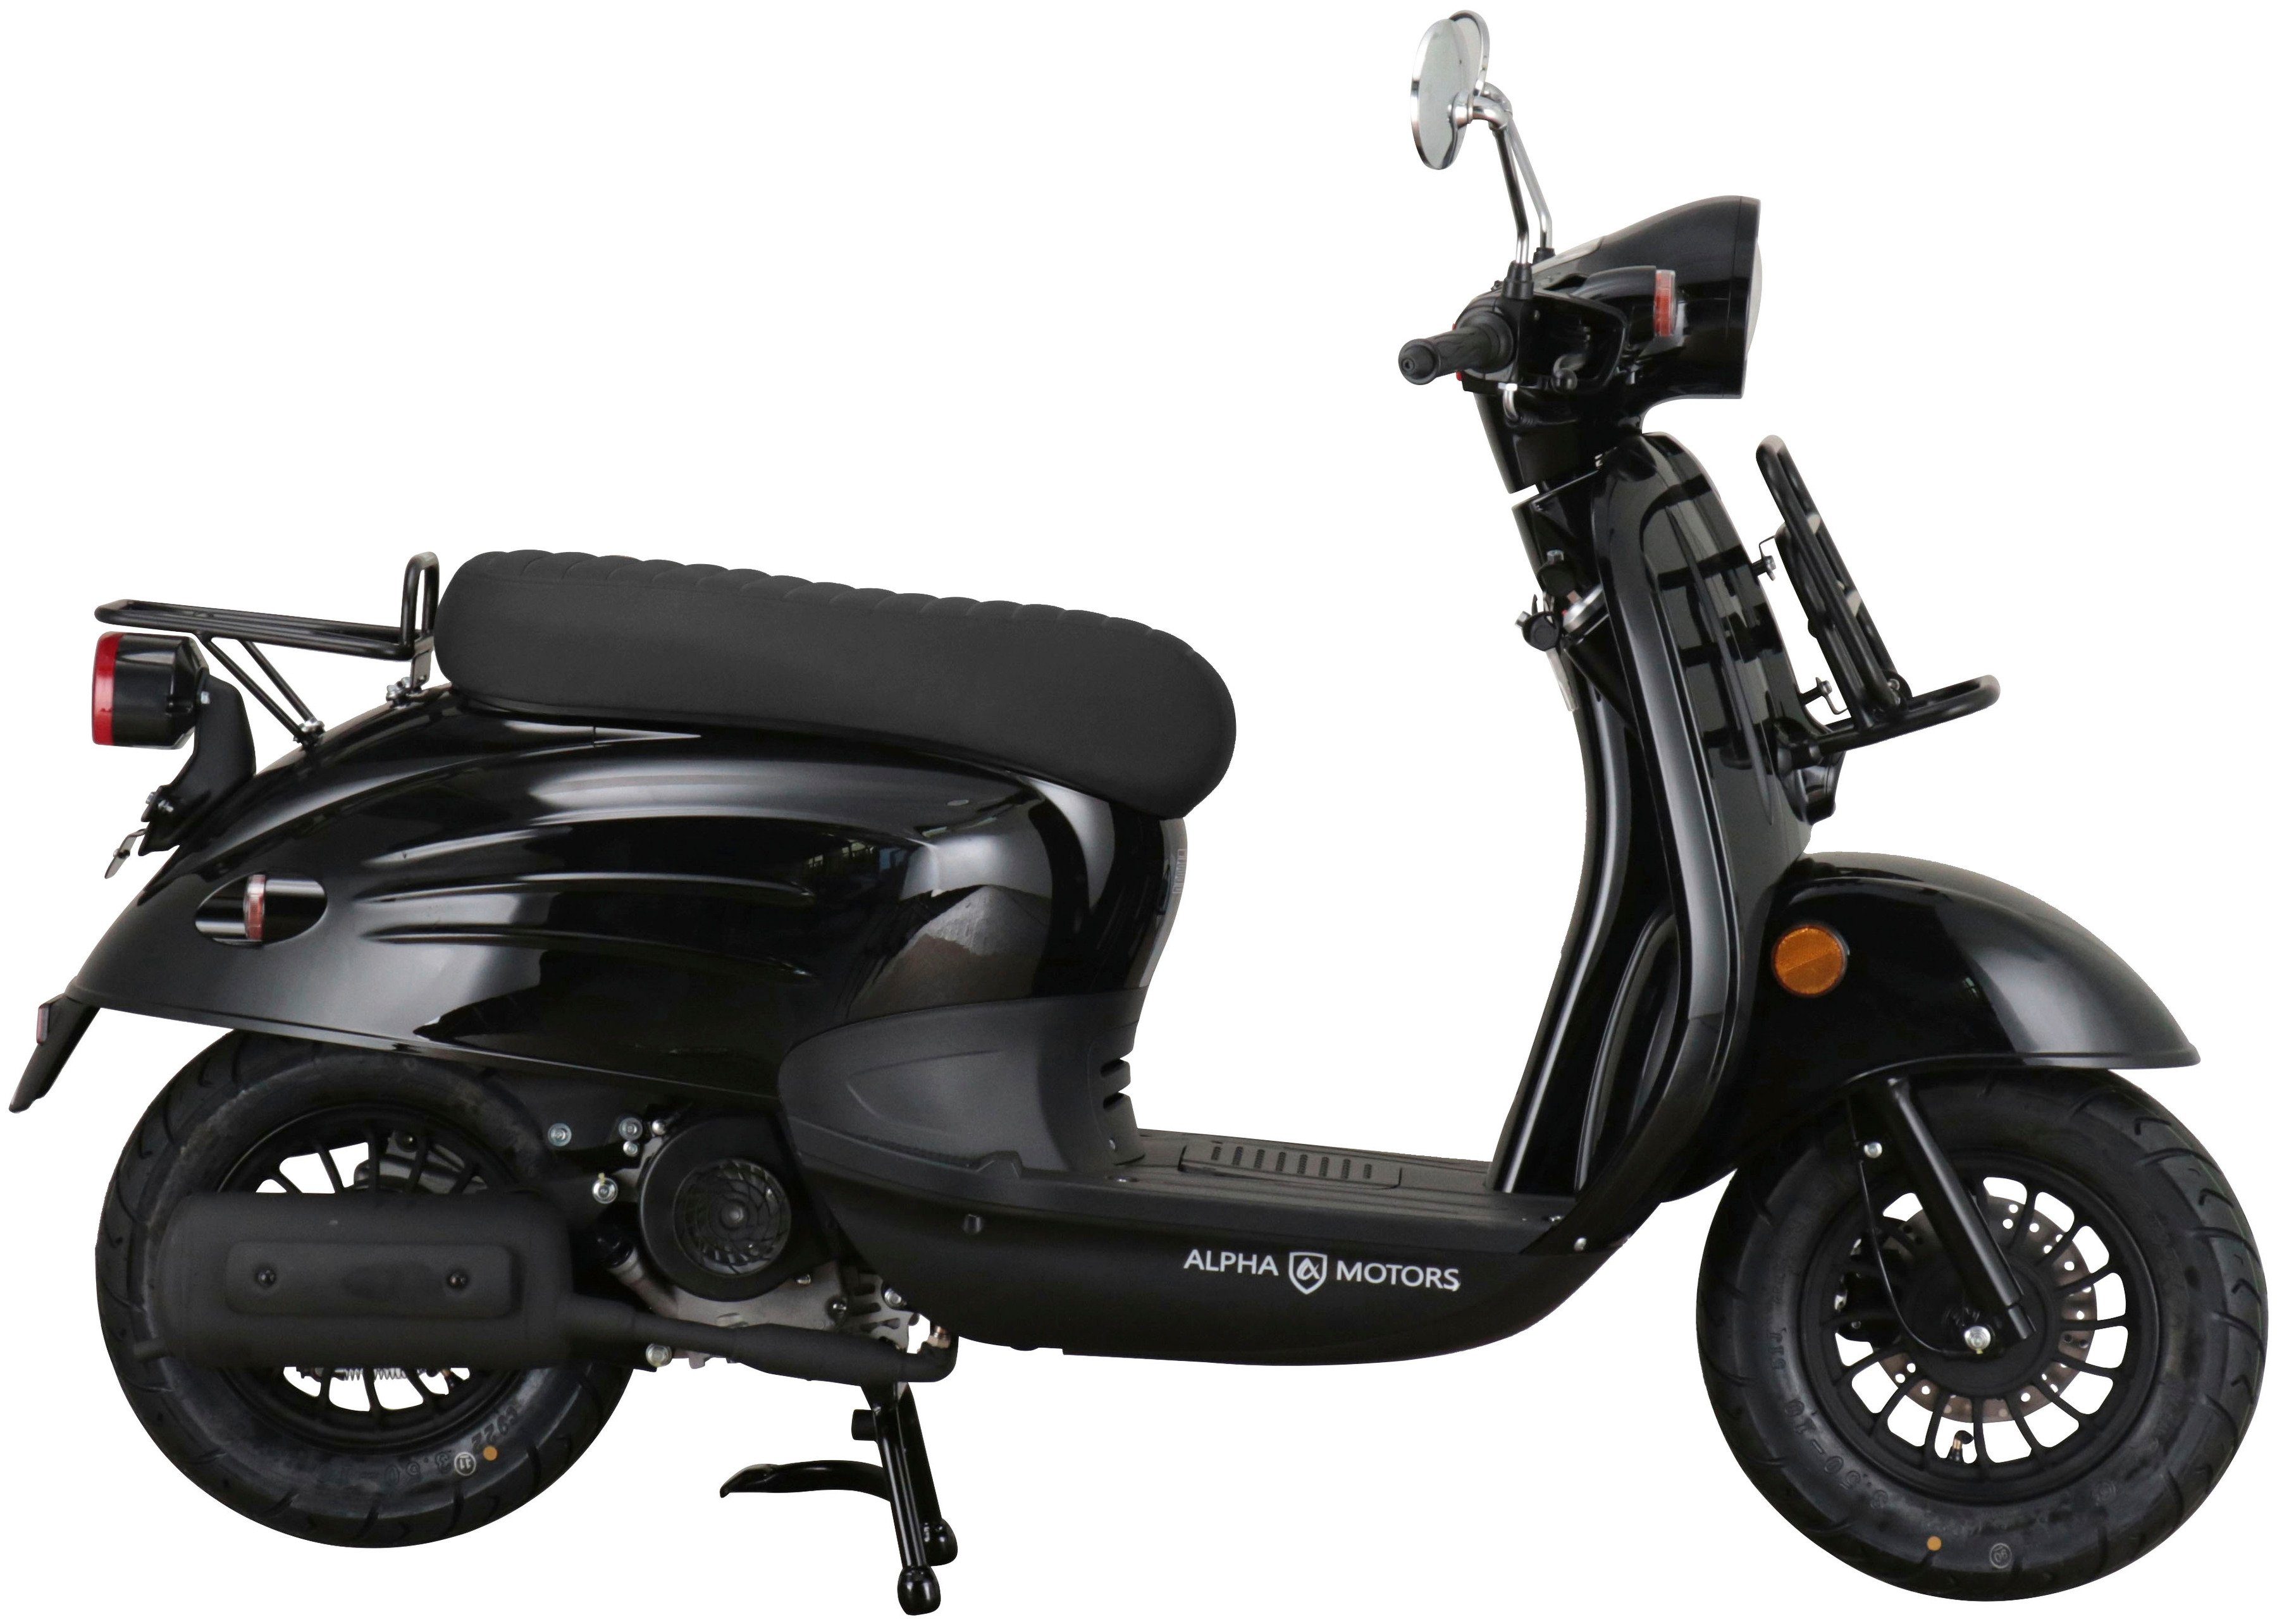 Alpha Motors Motorroller Adria, 50 schwarz km/h, Euro 45 ccm, 5